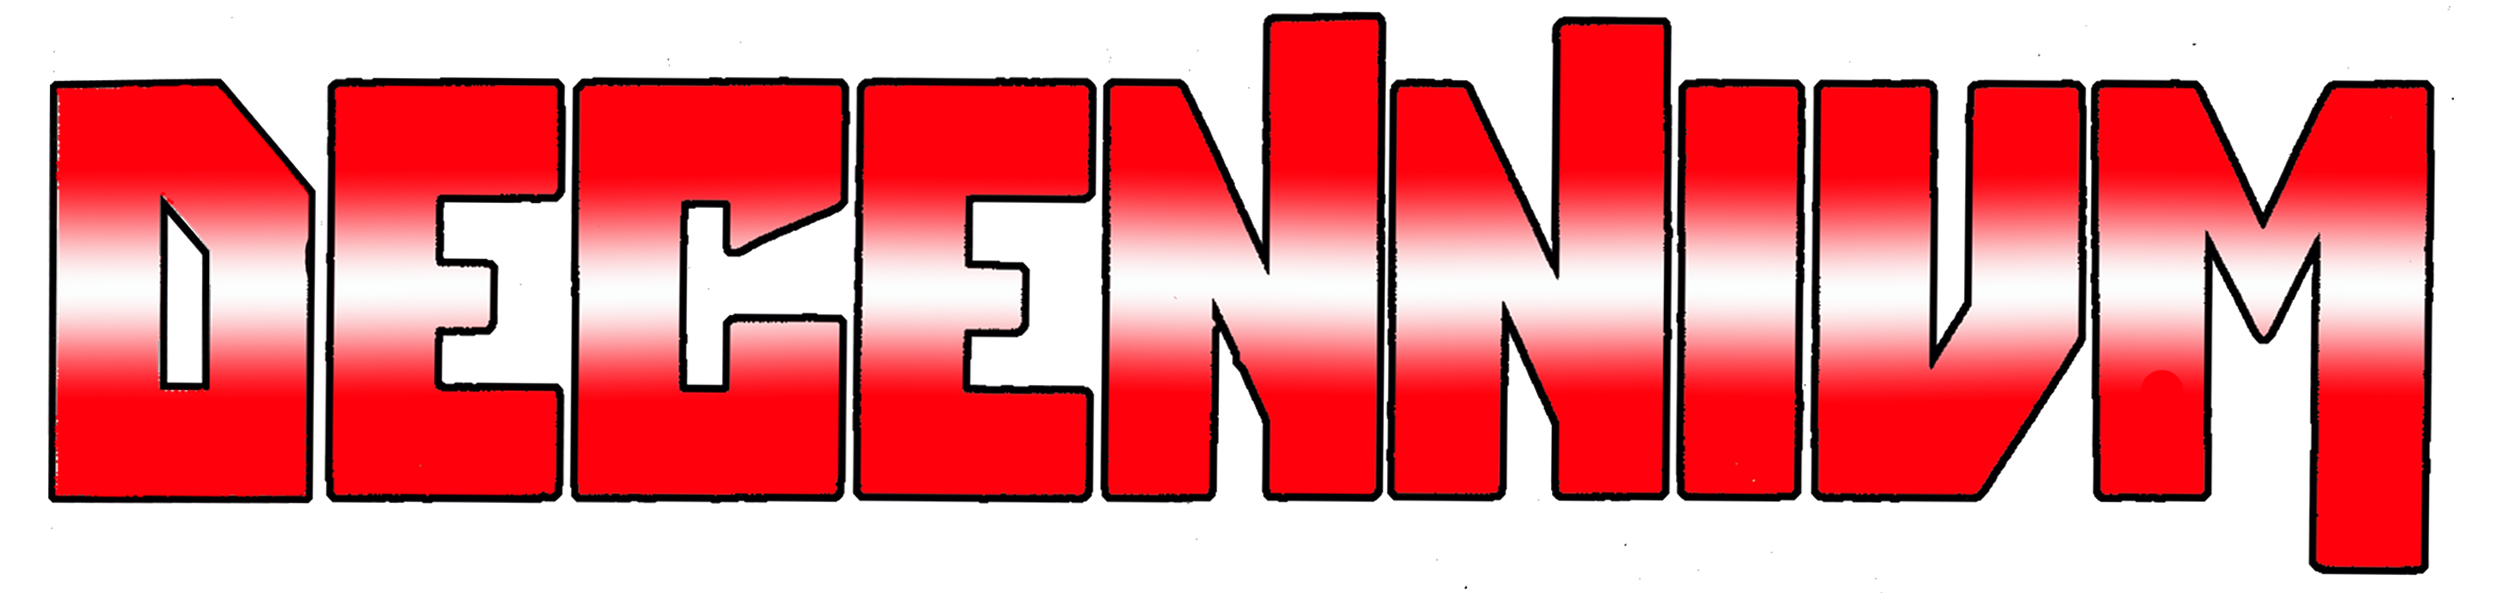 Decennium logo